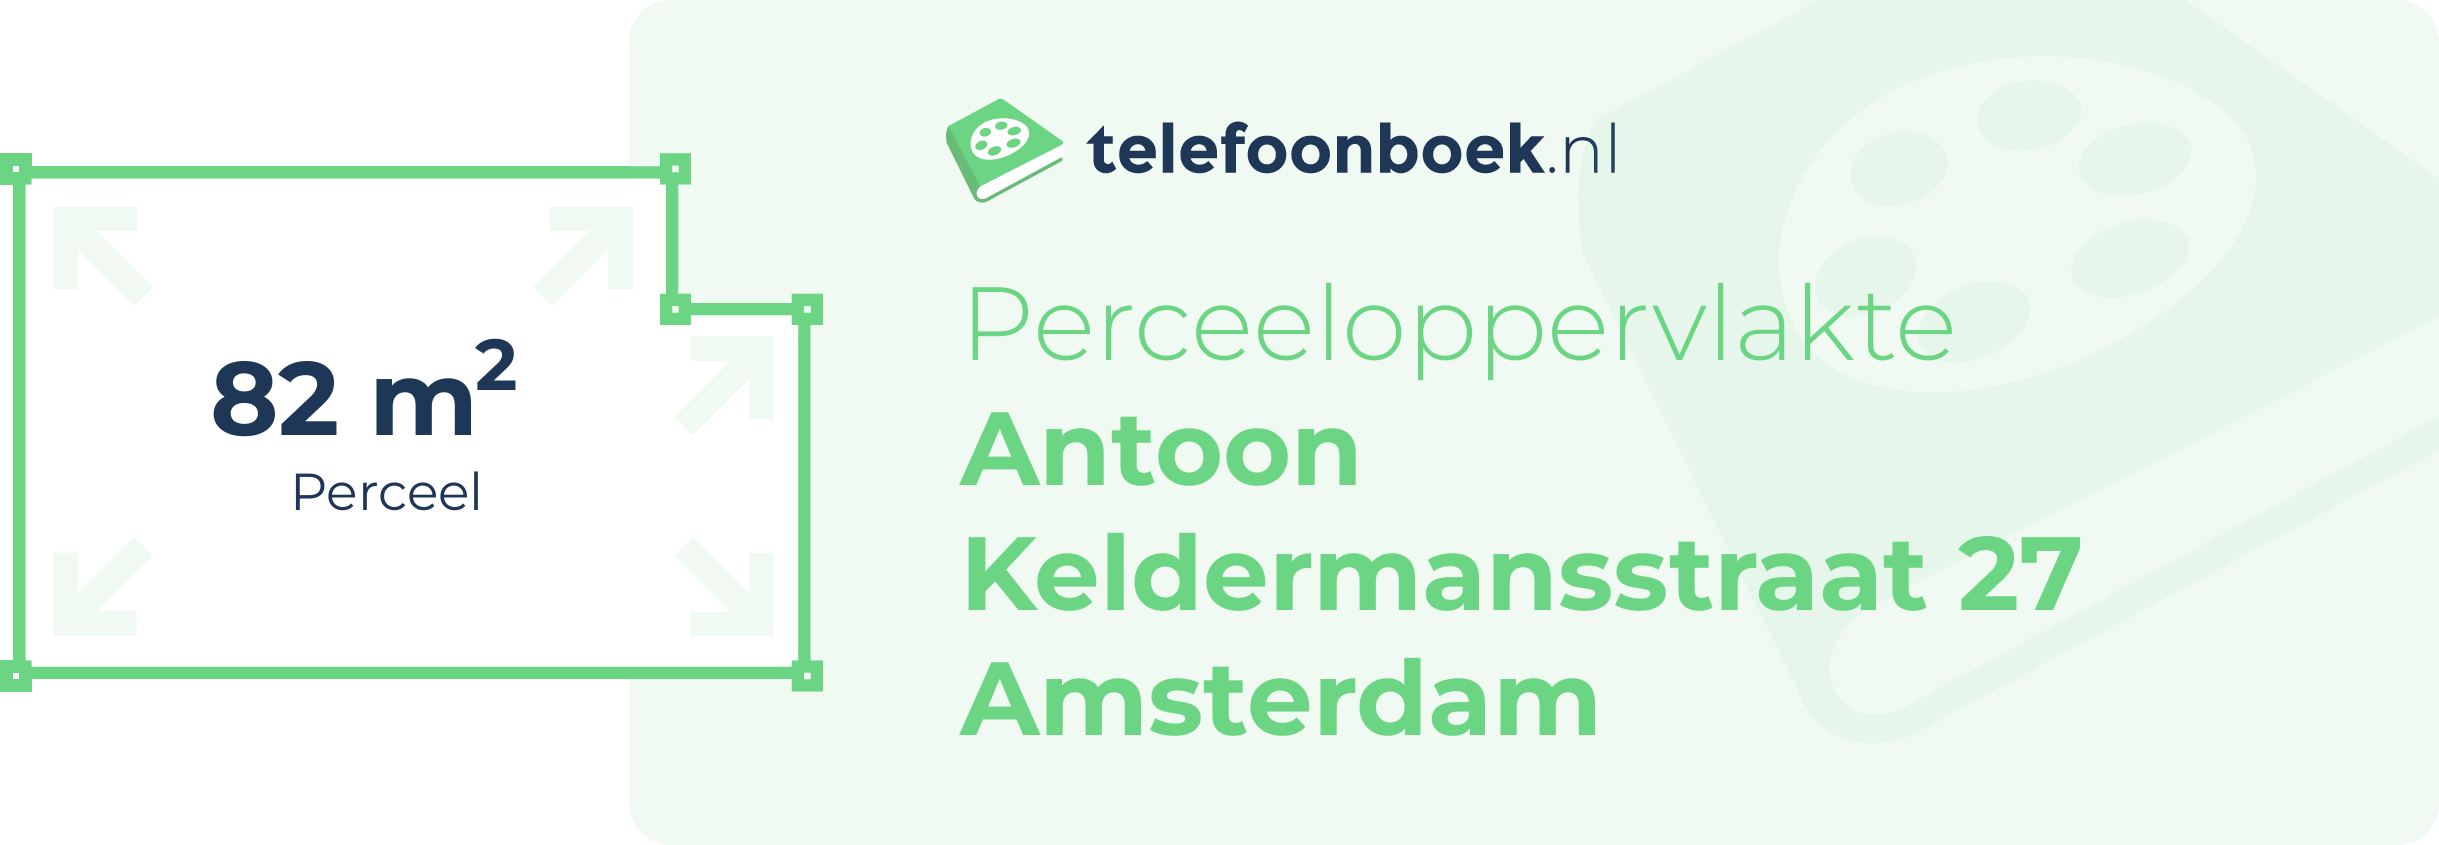 Perceeloppervlakte Antoon Keldermansstraat 27 Amsterdam